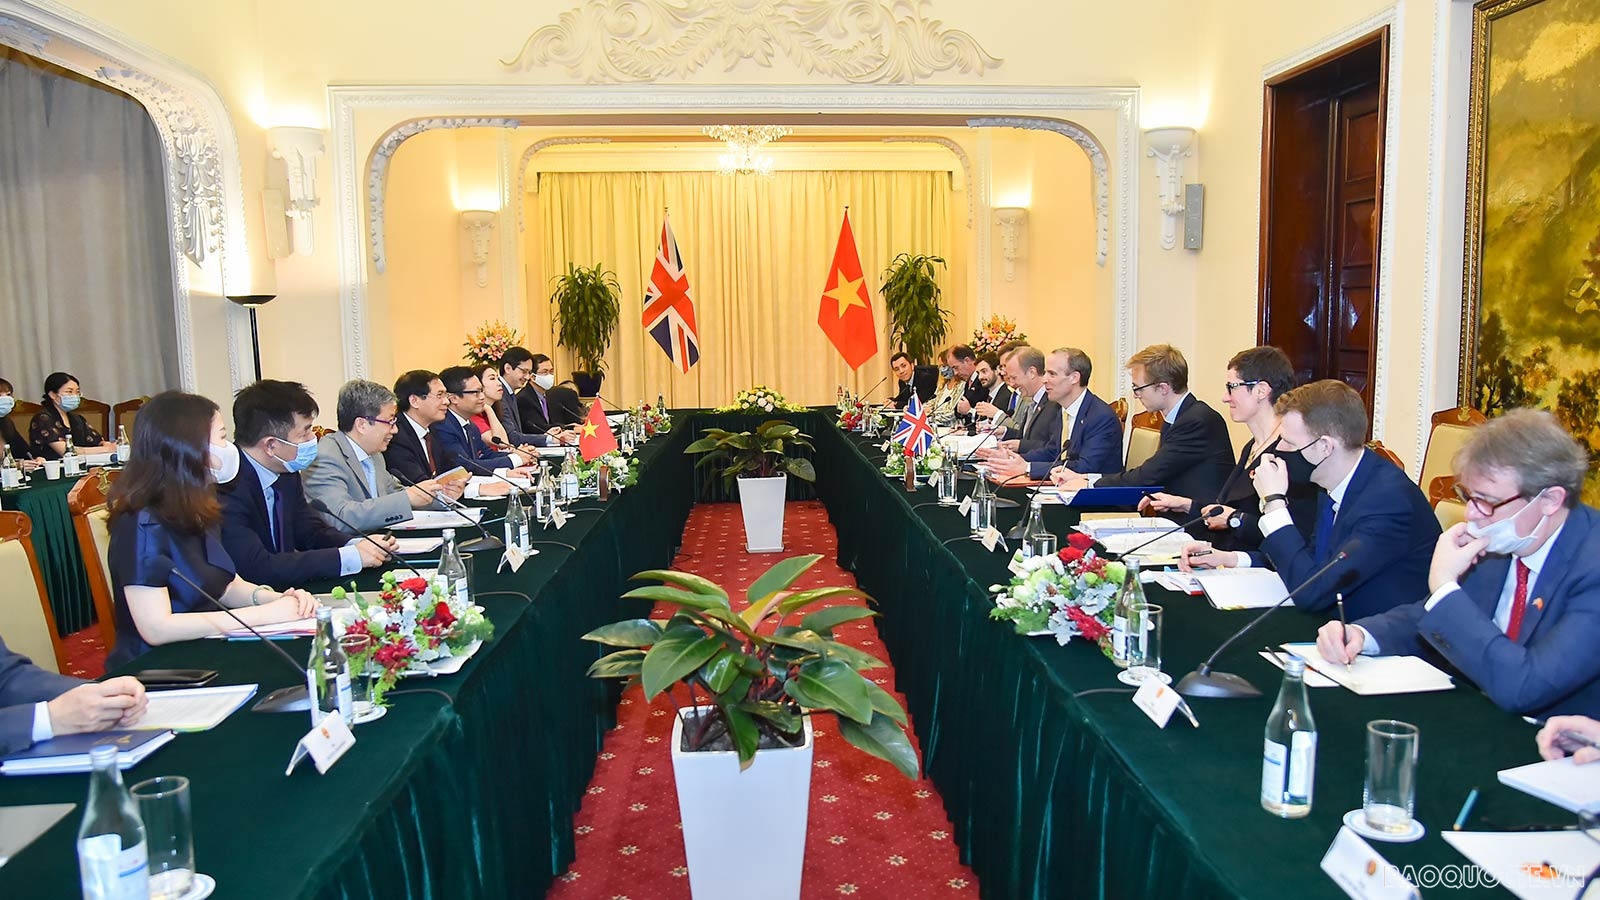 Quan hệ thương mại hai chiều Việt Nam-Anh đạt khoảng 5,6 tỉ USD năm 2020, giảm gần 15% so với 2019, trong đó Việt Nam xuất khẩu đạt 4,9 tỉ USD và nhập khẩu đạt 700 triệu USD. Hai bên đã chính thức ký FTA song phương (ngày 29/12/2020) để thúc đẩy quan hệ t